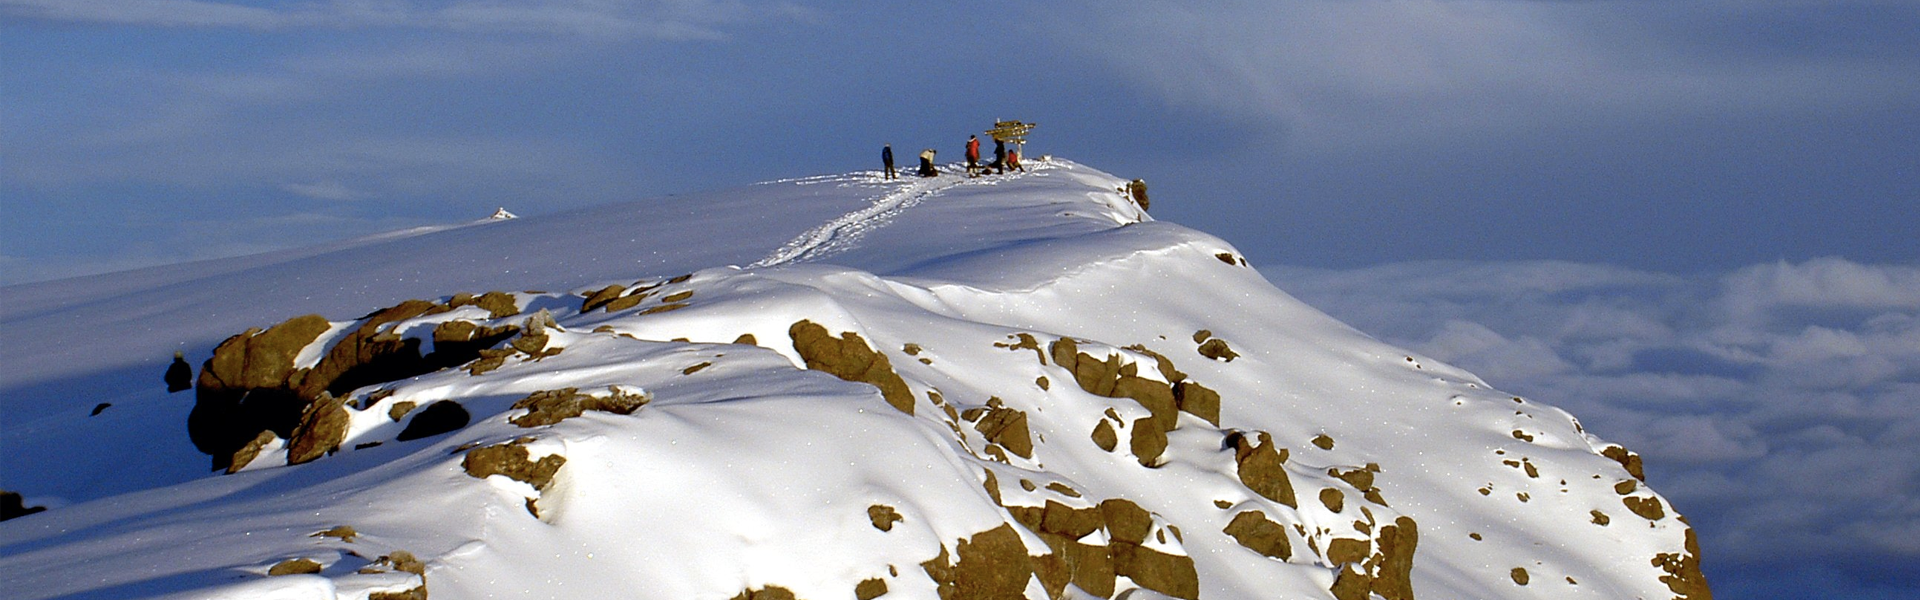 Adventure Consultants Everest Success